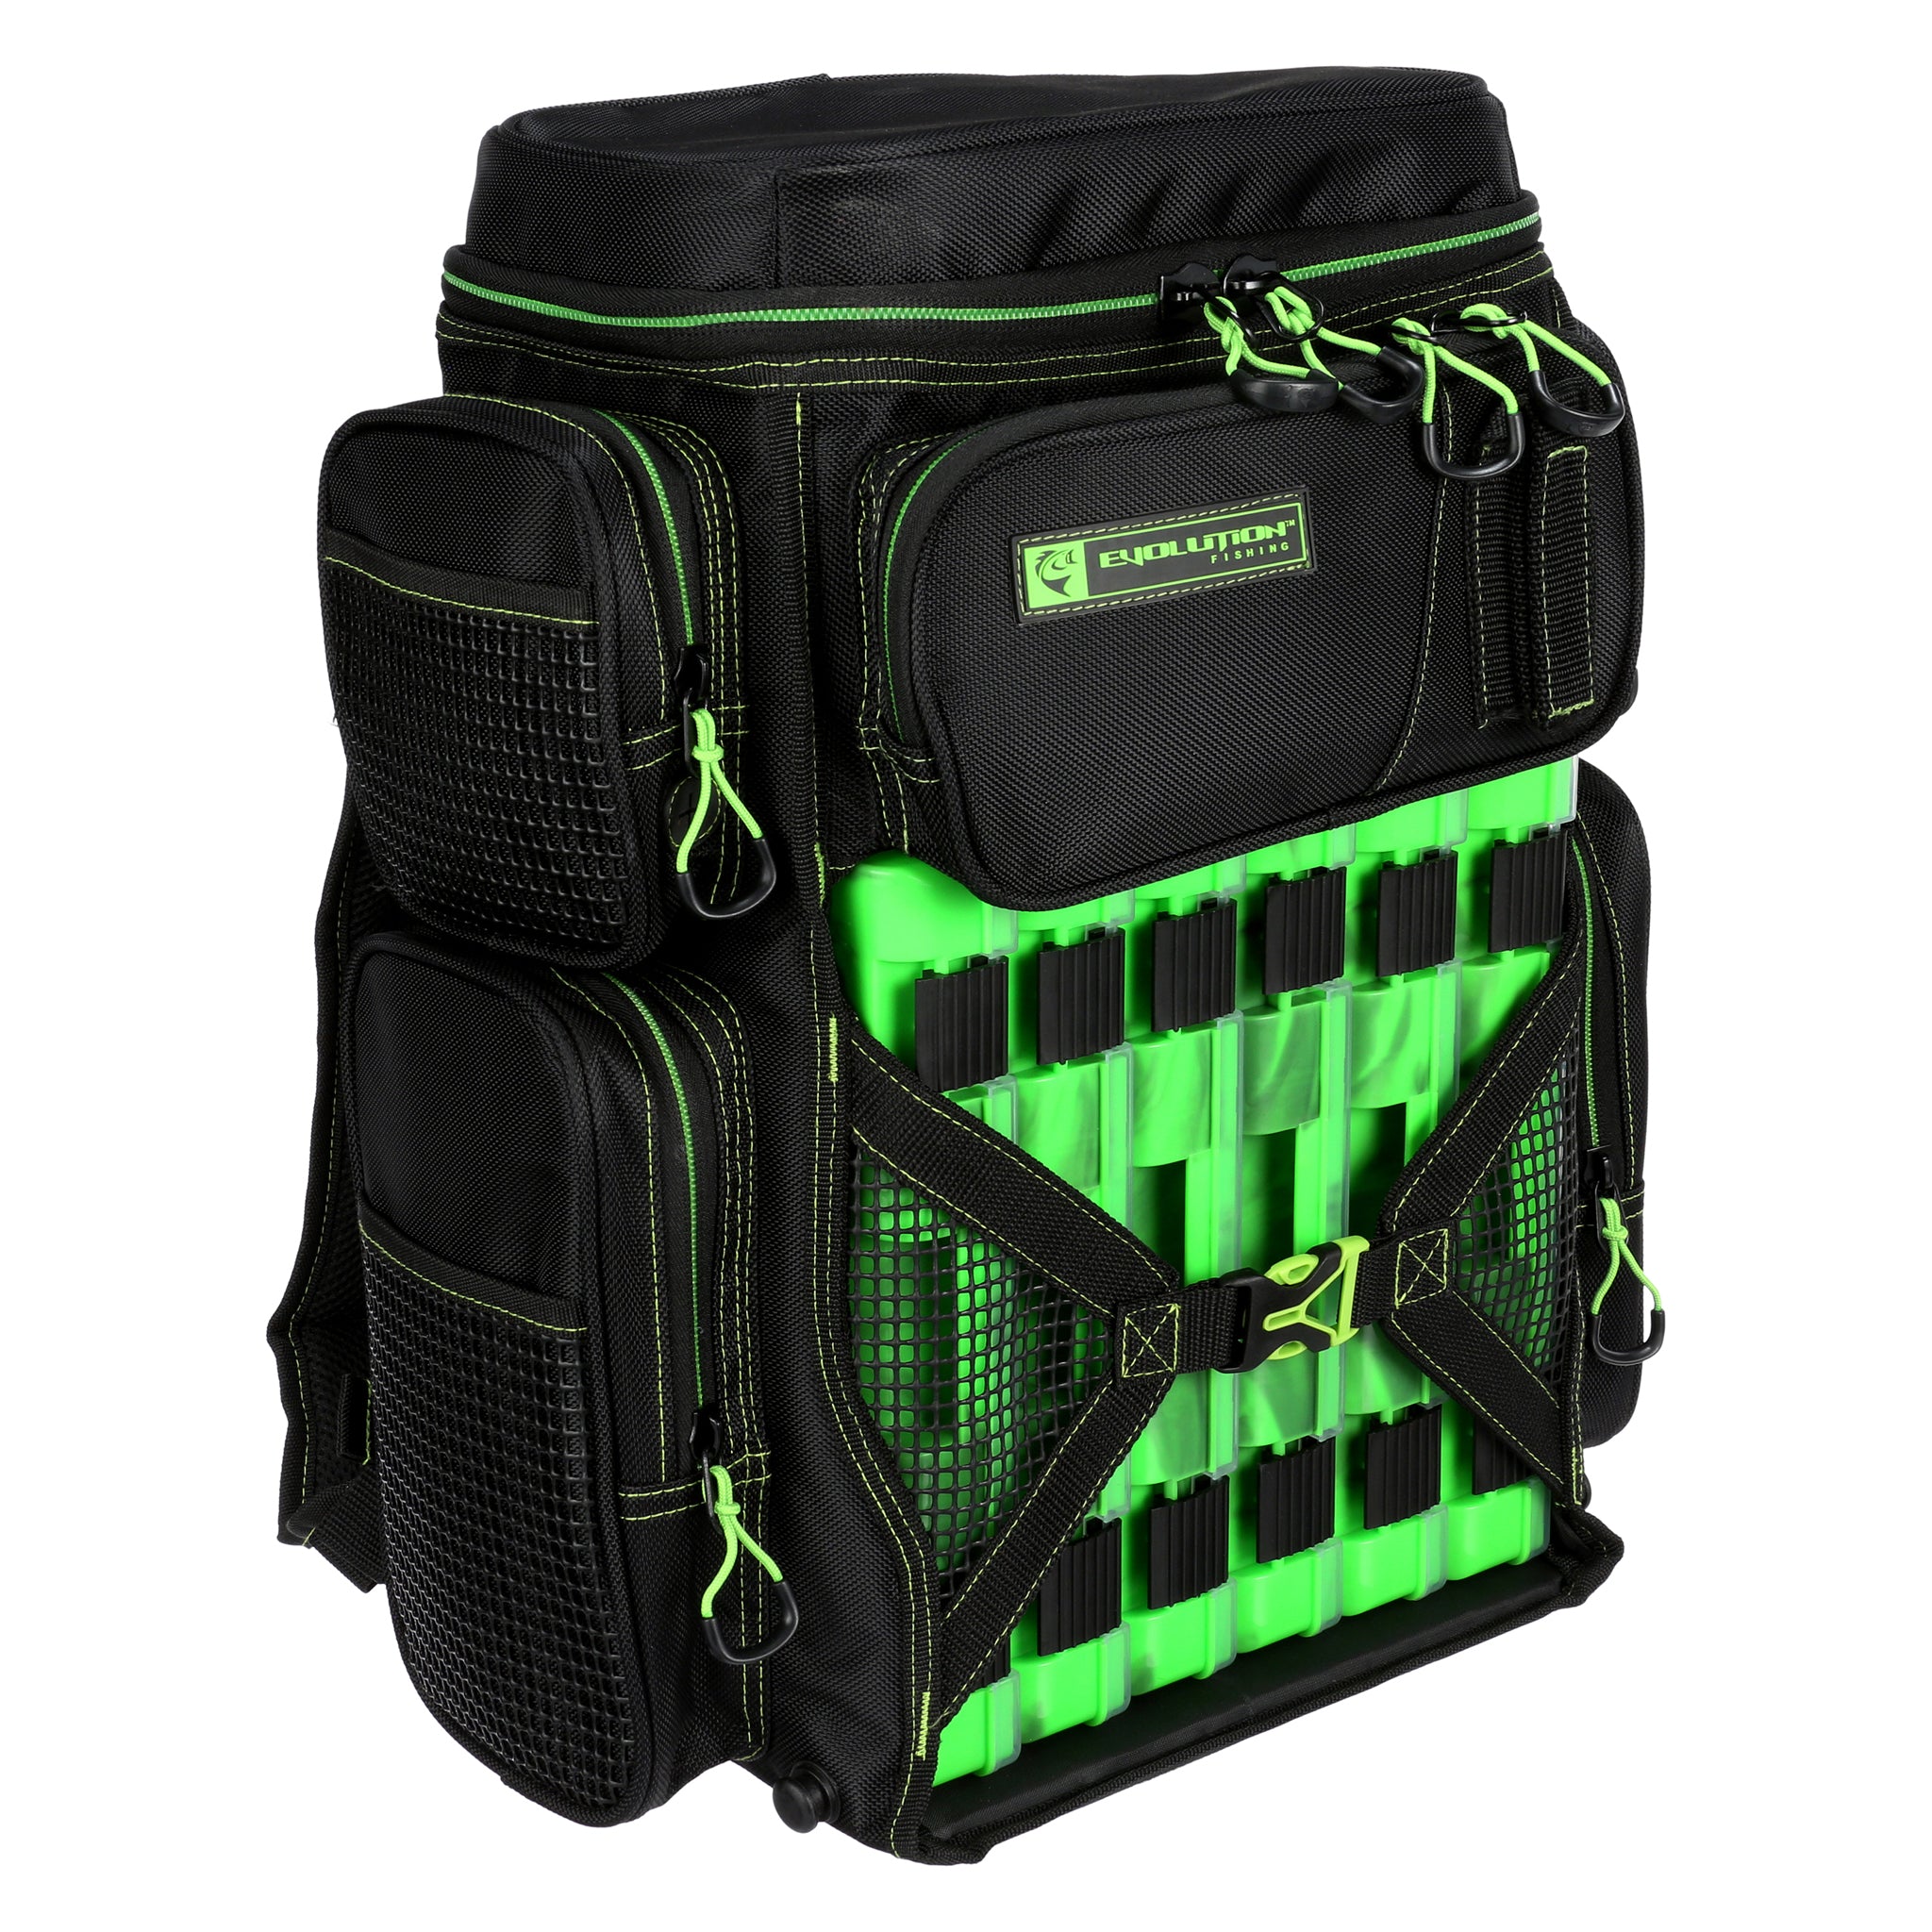 Fishing Packs - Waterproof Backpacks & Fishing Bags - DRYFT